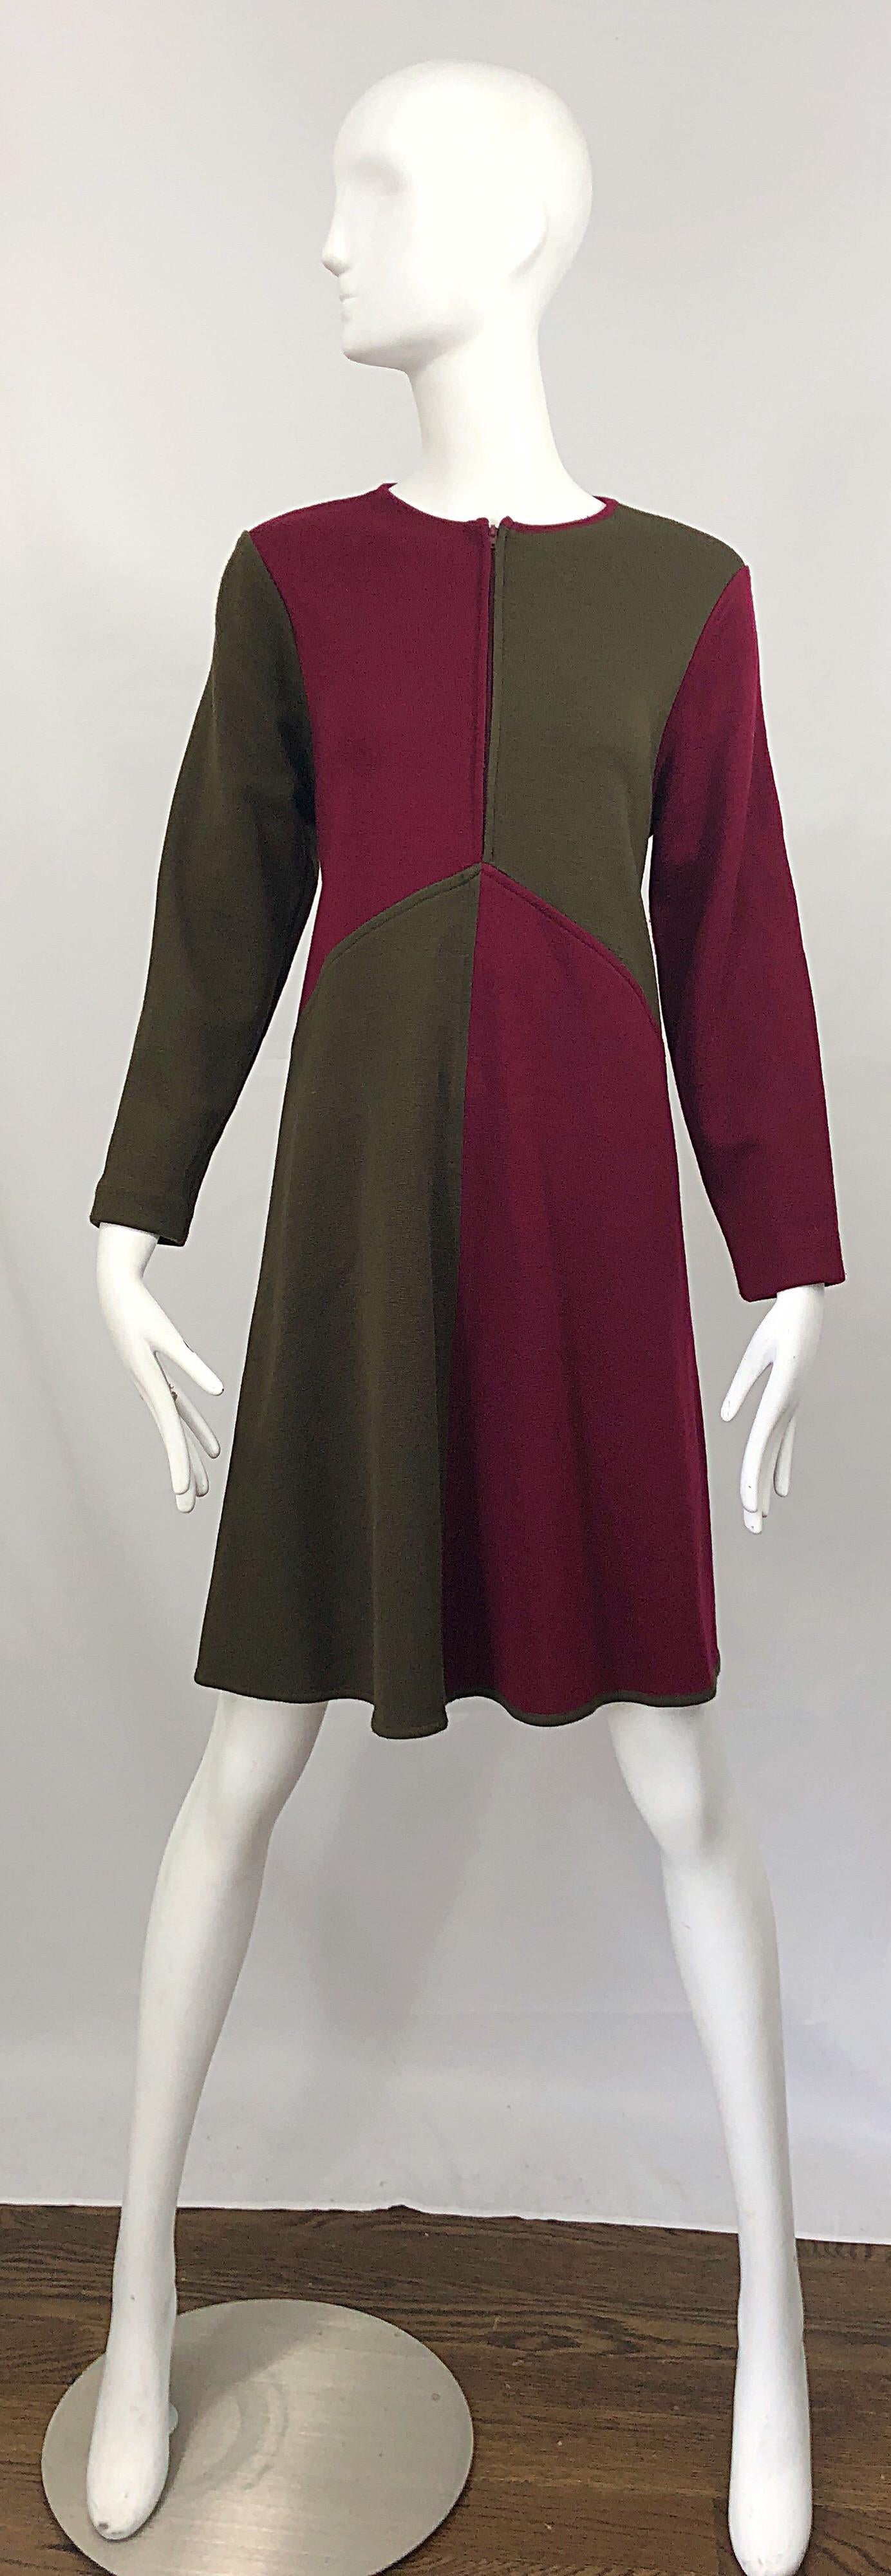 Vintage HARVE BENARD 1960s Style Maroon Burgundy + Brown Knit Wool Swing Dress 10